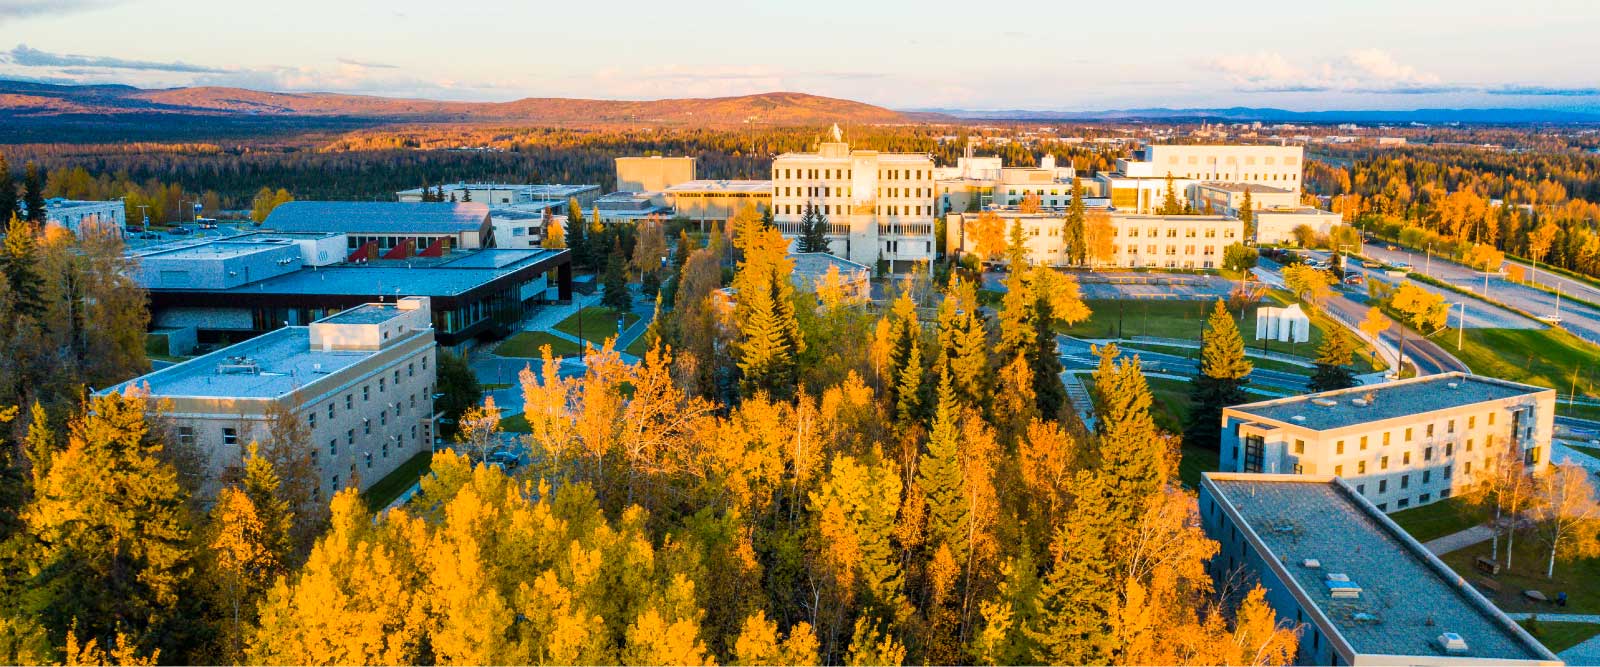 UAF Home University of Alaska Fairbanks